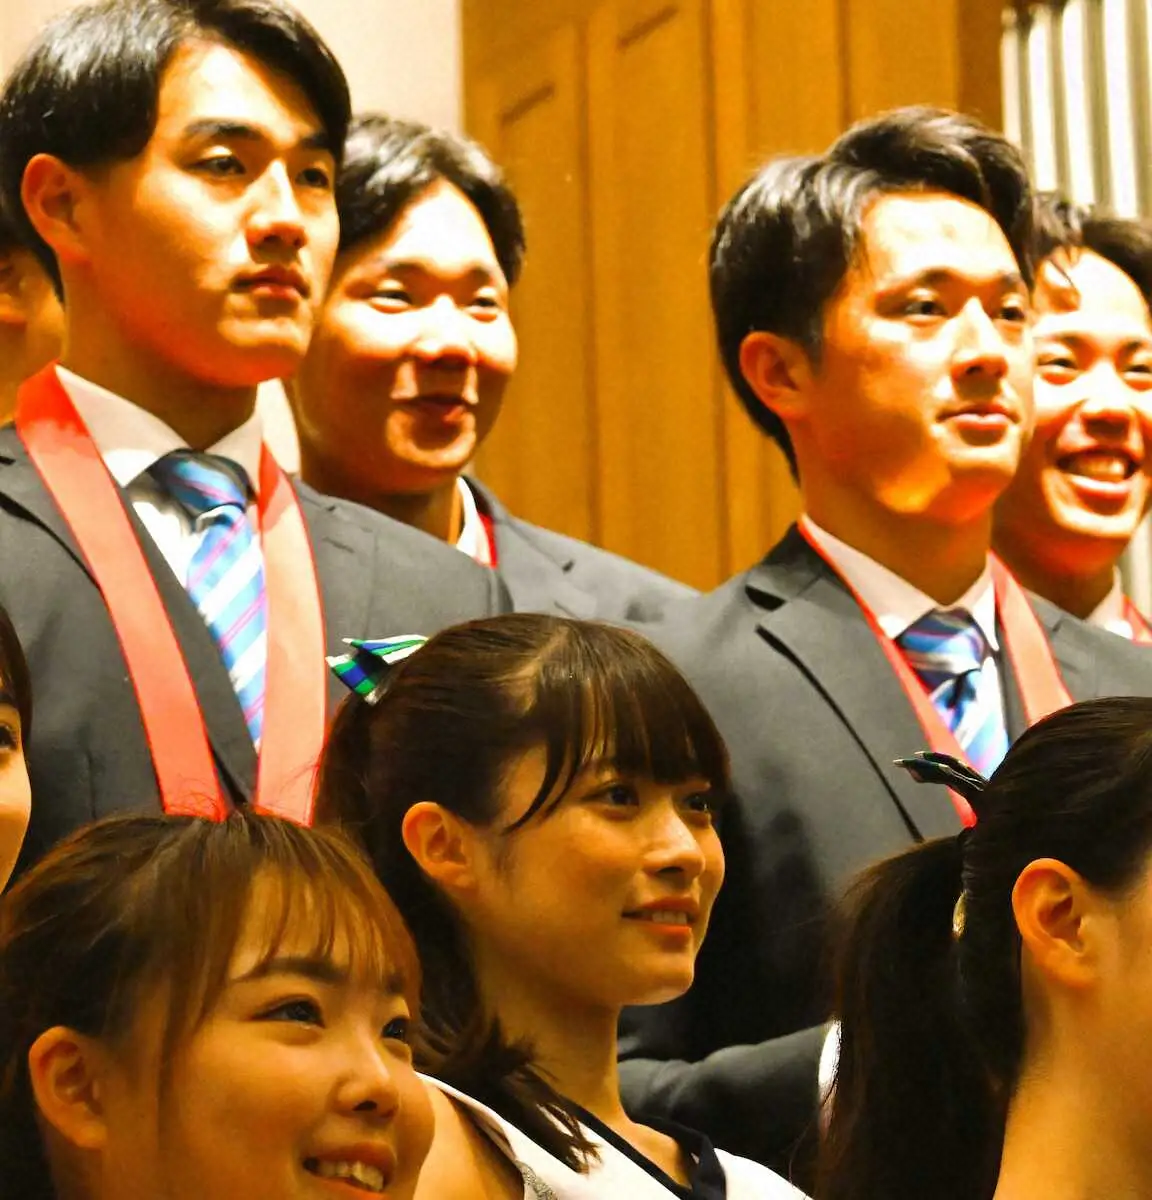 青学大優勝報告会で西川　大学侍入りへ「アピールして選ばれて活躍できるようやっていきたい」